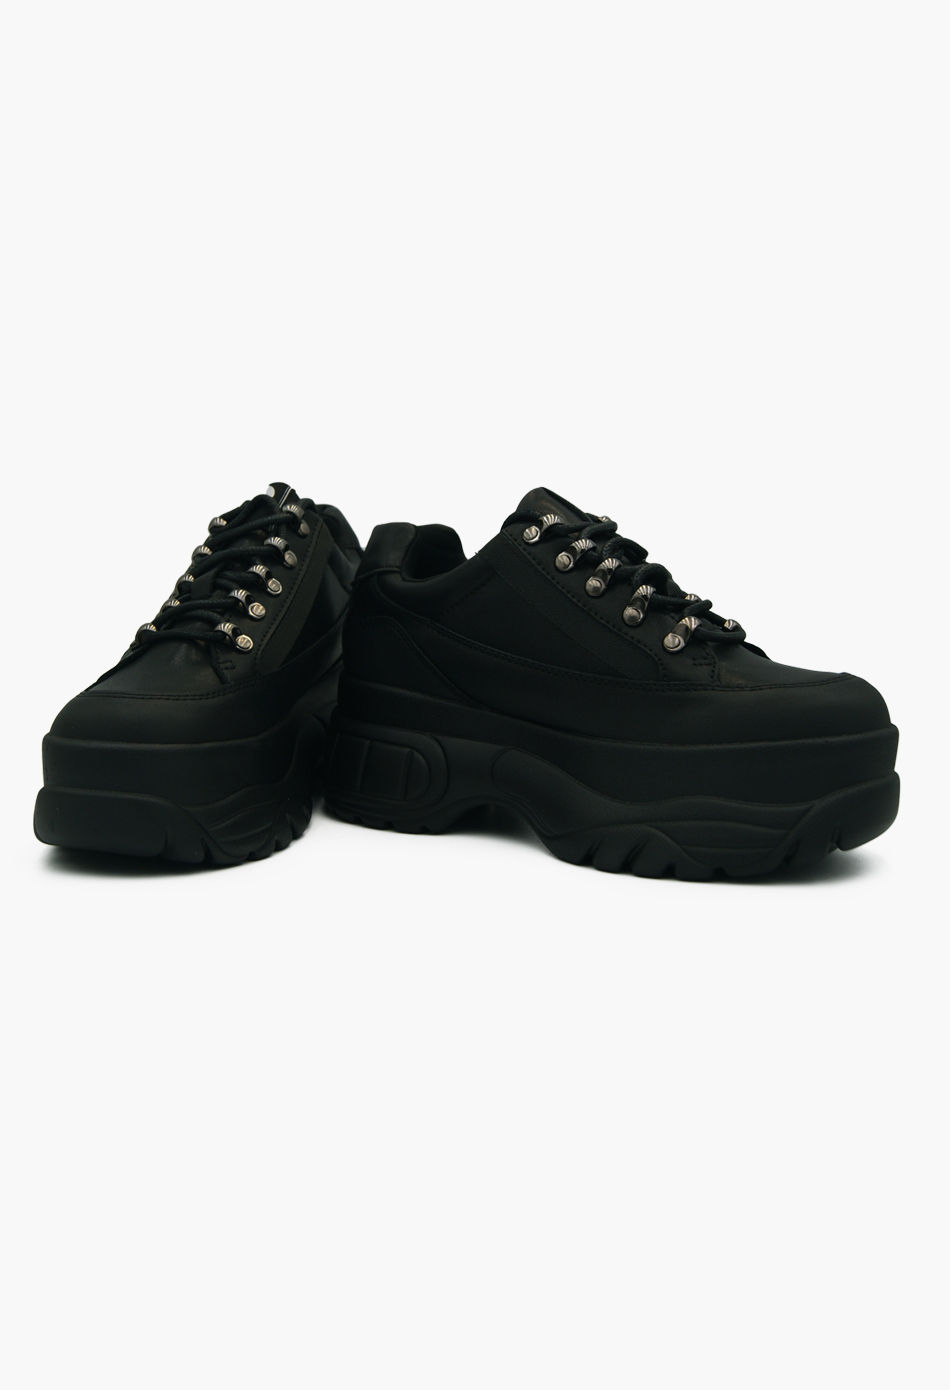 Γυναικεία Chunky Sneakers Wedges Μαύρο / H9008-black ΑΘΛΗΤΙΚΑ με ΠΛΑΤΦΟΡΜΑ joya.gr